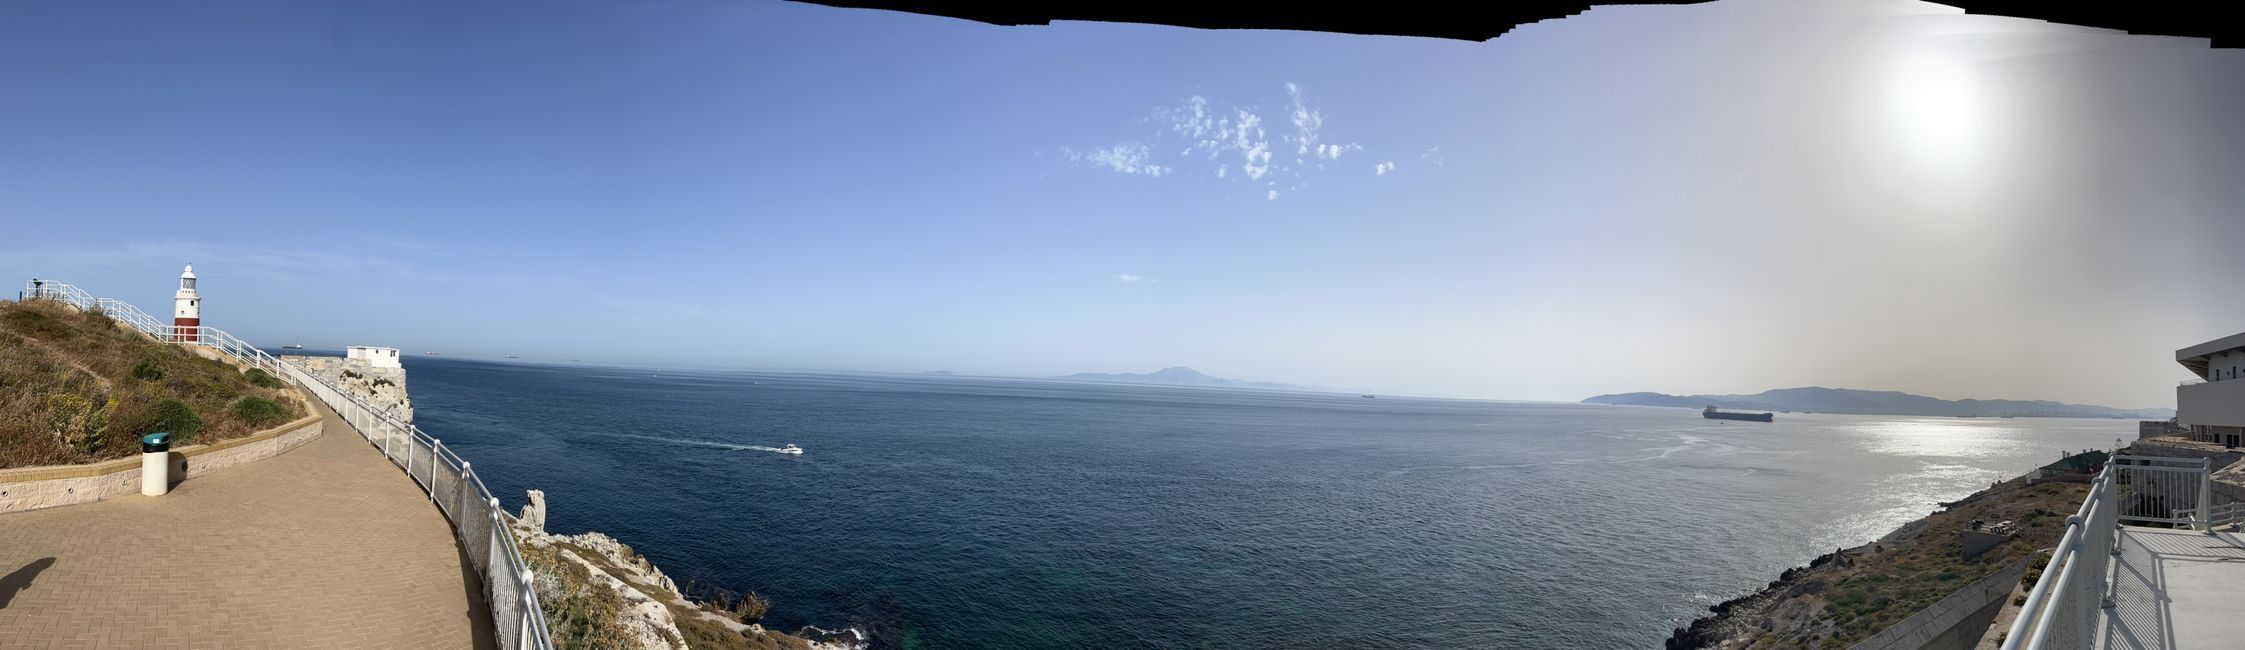 Blick nach Afrika - Ceuta/Spanien und Marokko